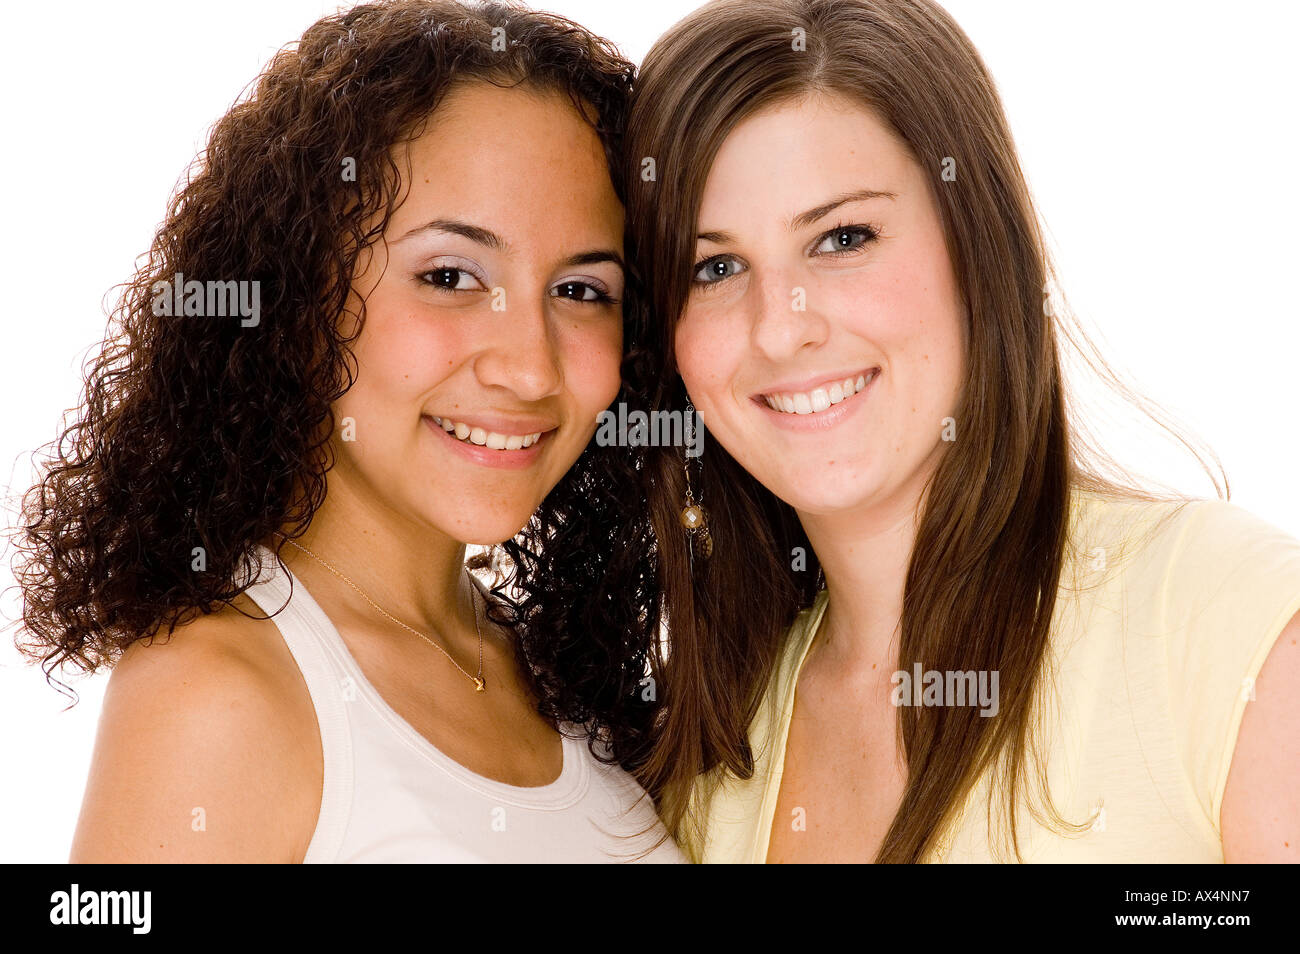 Zwei junge attraktive Frauen verschiedener Rassen Stockfoto